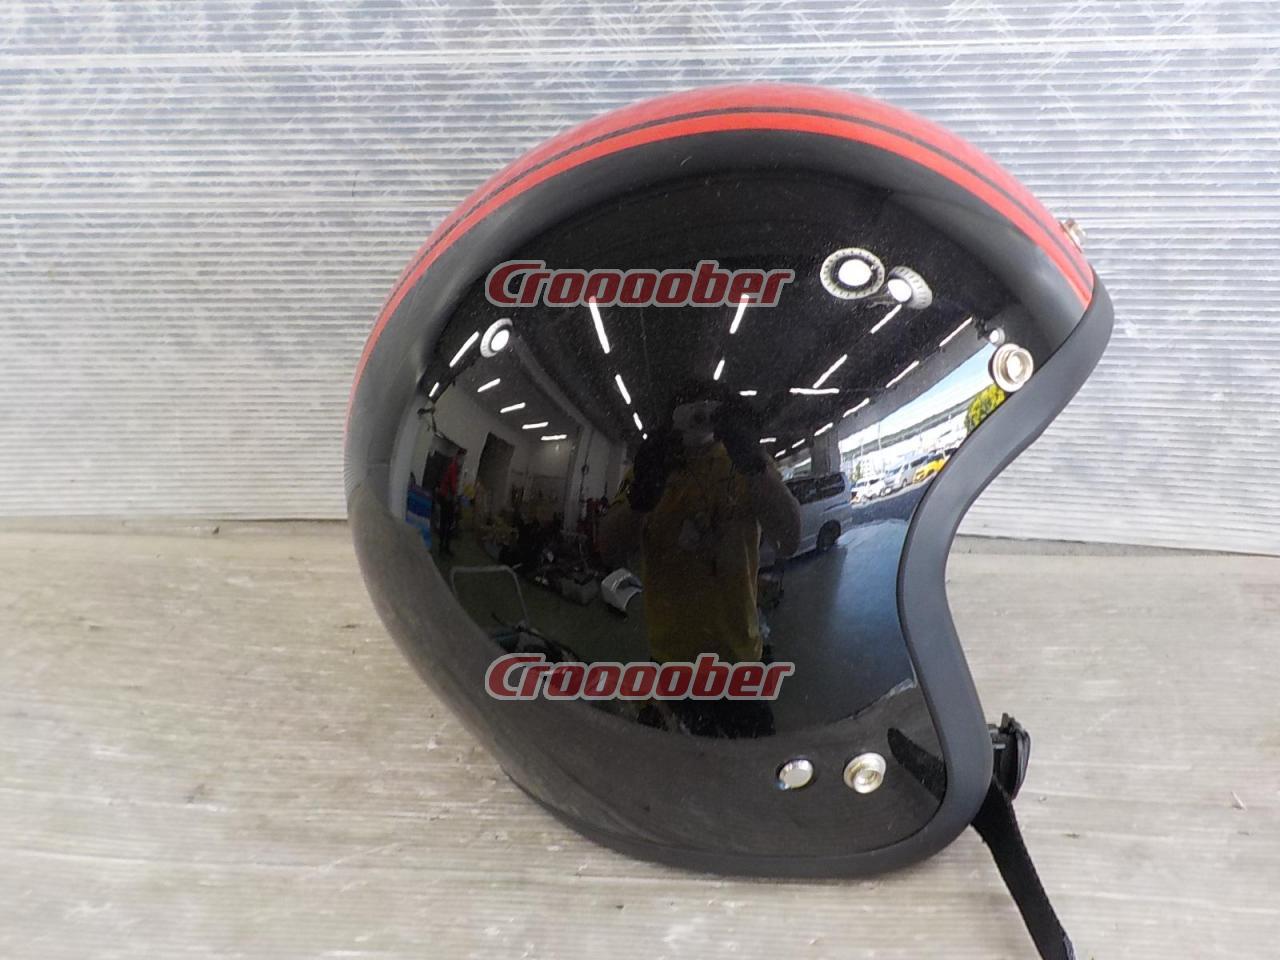 山城 FC-022 JUQUE ストライプジェットヘルメット サイズ:M(57-58cm 